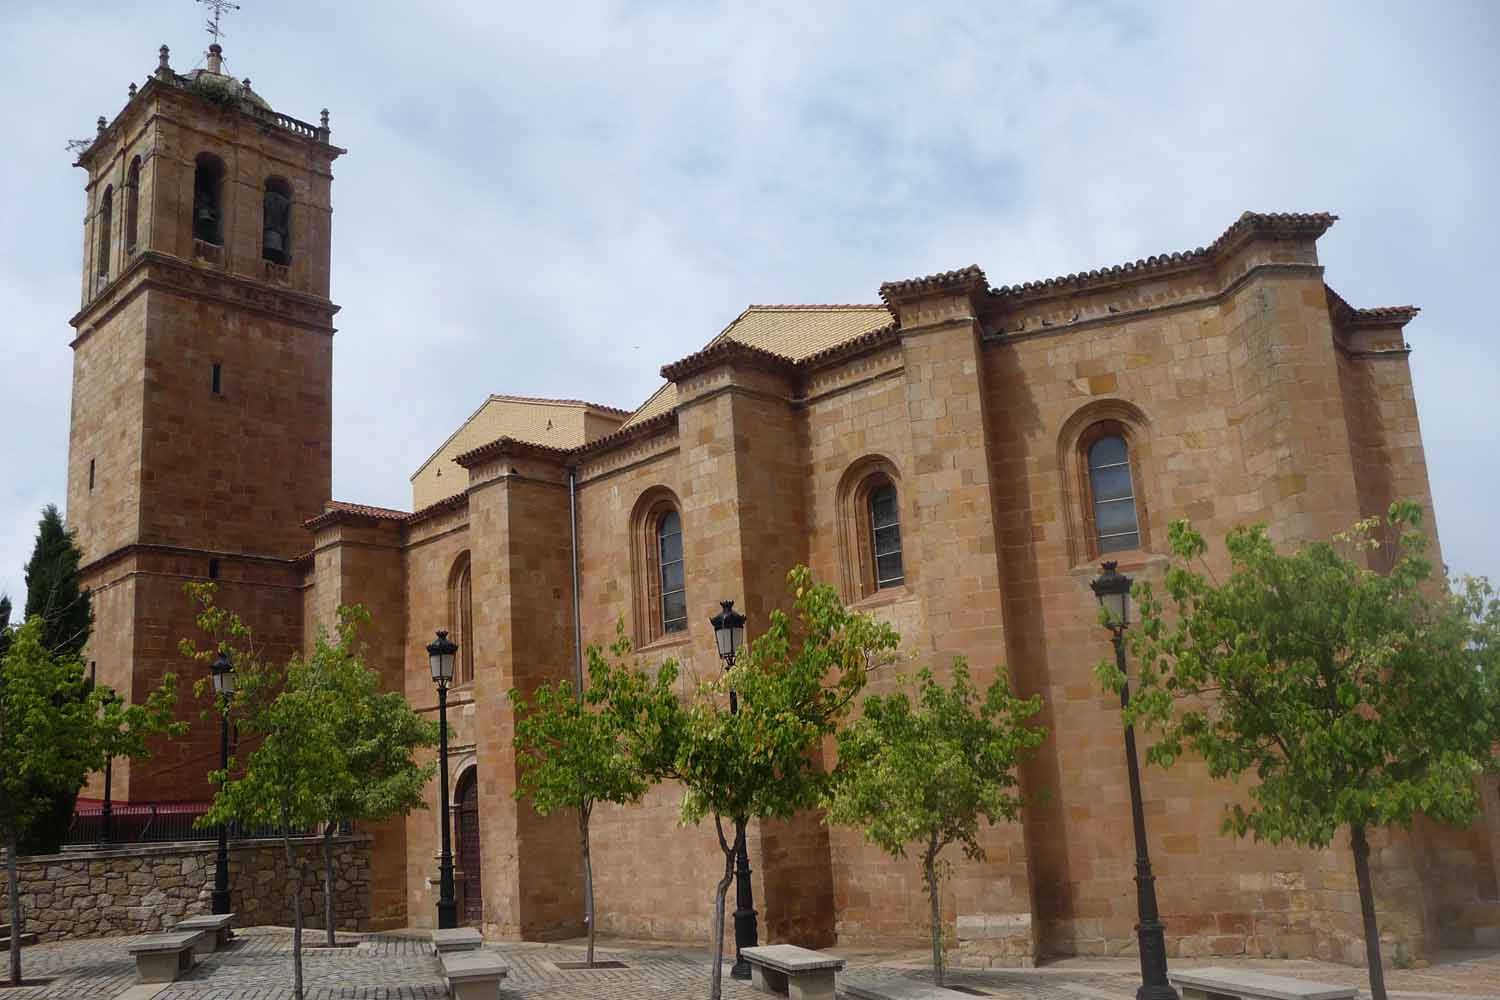 Concatedral de San Pedro